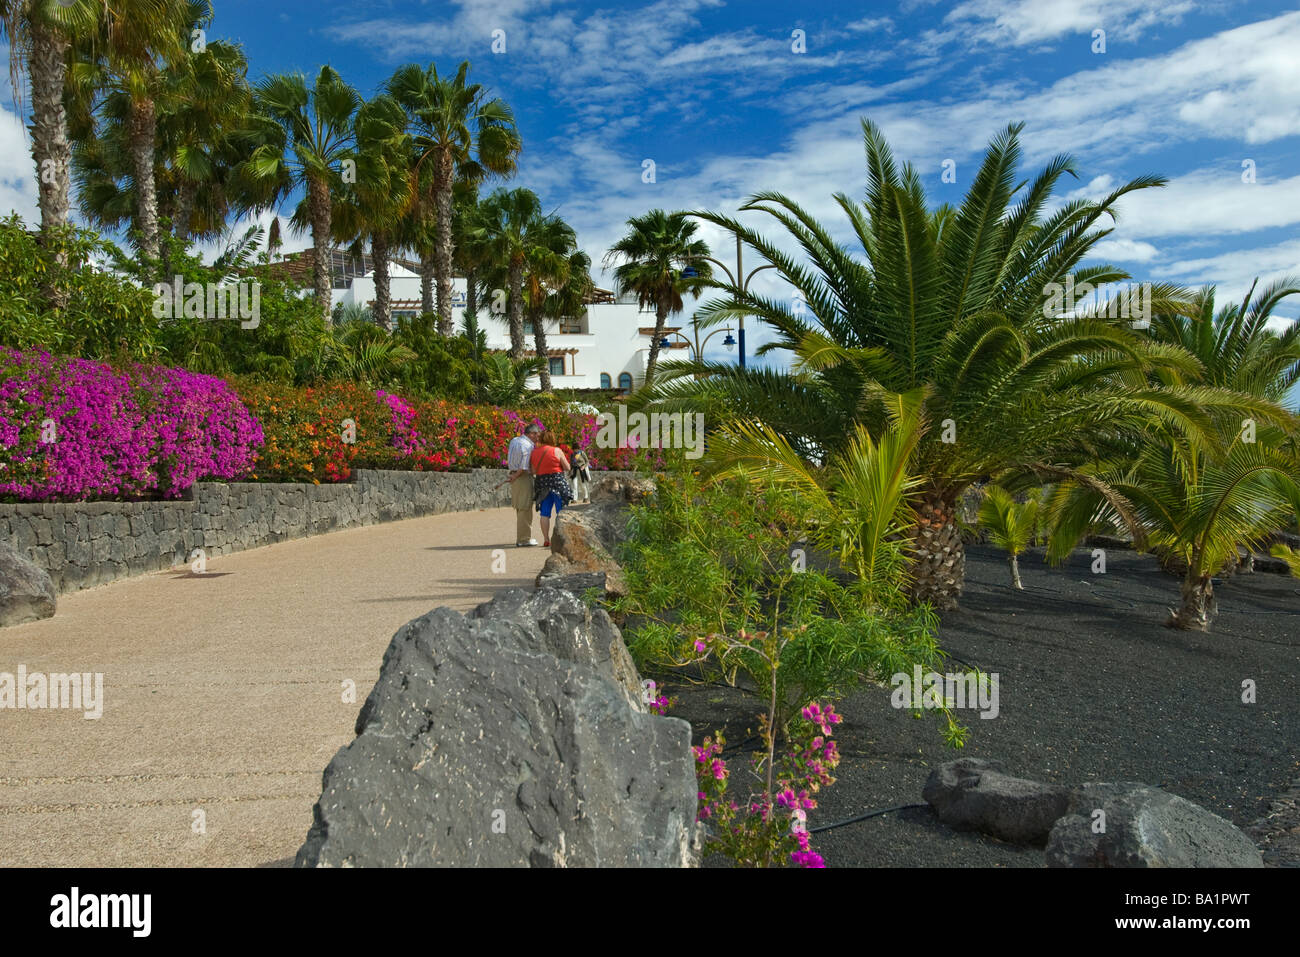 La promenade bordée de bougainvilliers colorés et de palmiers avec des promeneurs, Playa Blanca Lanzarote Iles Canaries Espagne Banque D'Images